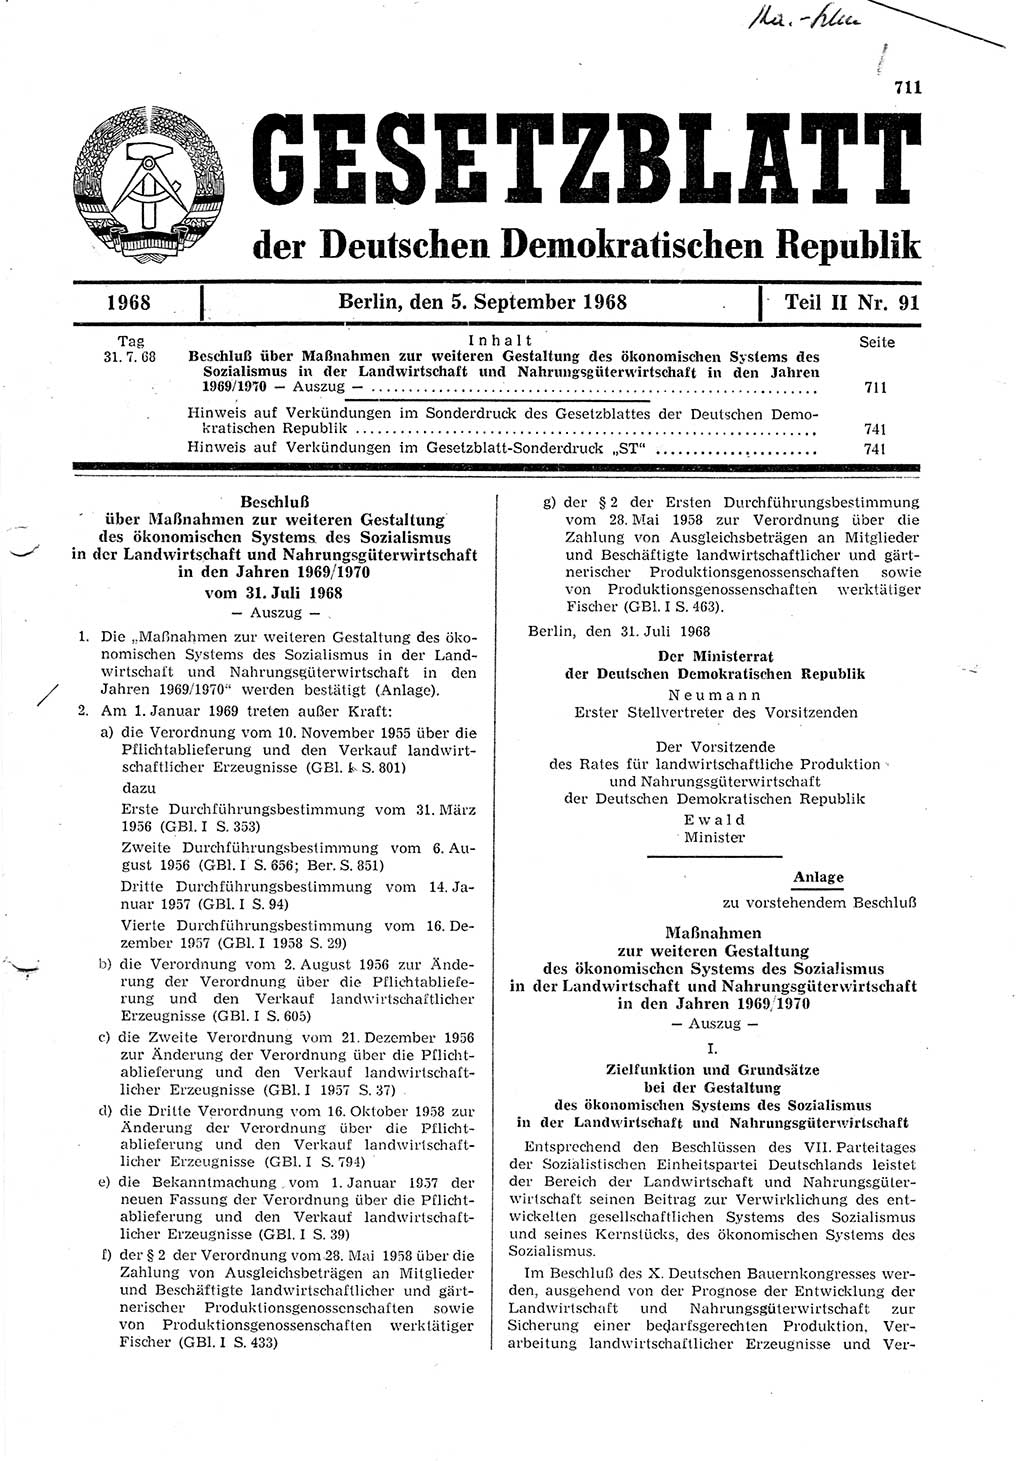 Gesetzblatt (GBl.) der Deutschen Demokratischen Republik (DDR) Teil ⅠⅠ 1968, Seite 711 (GBl. DDR ⅠⅠ 1968, S. 711)